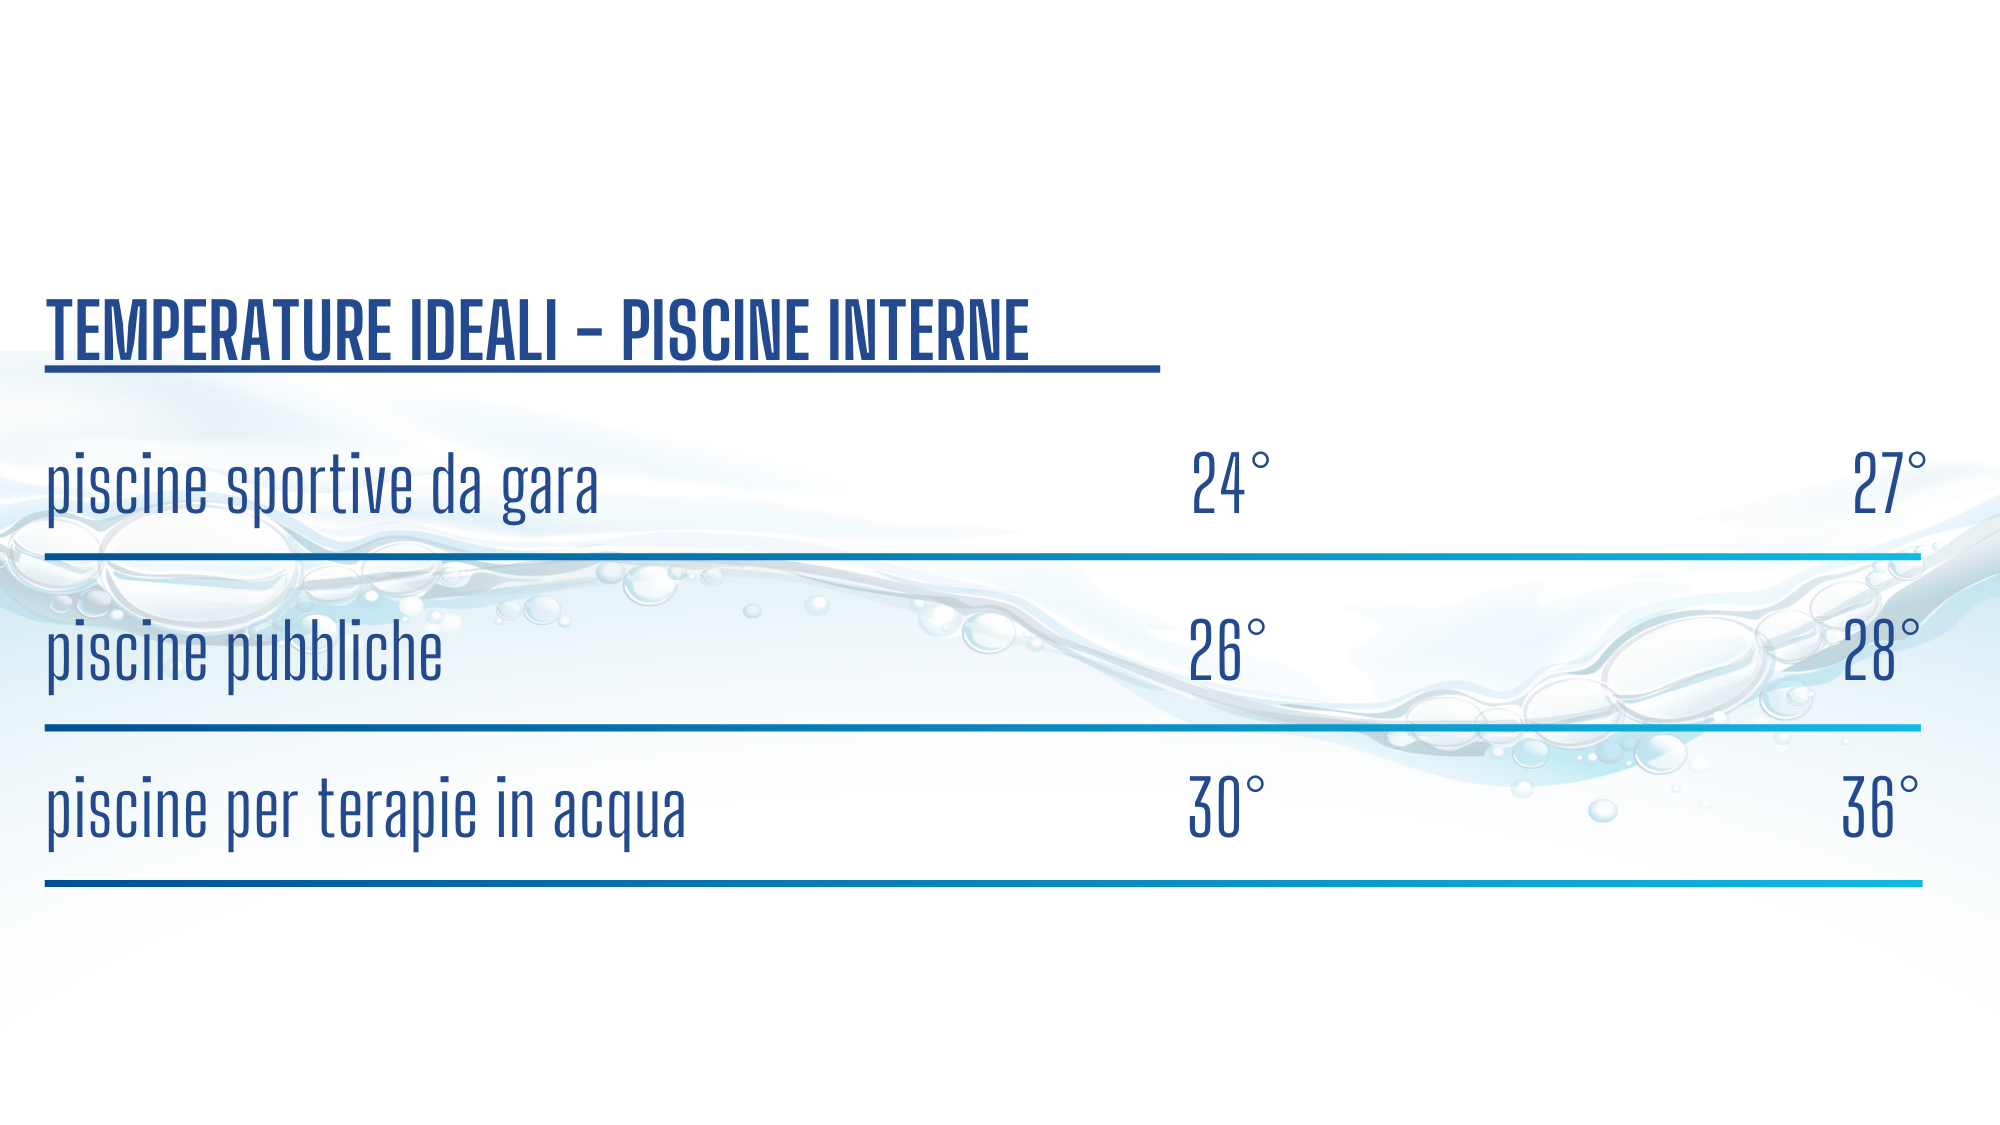 Tabella illustrativa delle temperature ideali per piscine interne